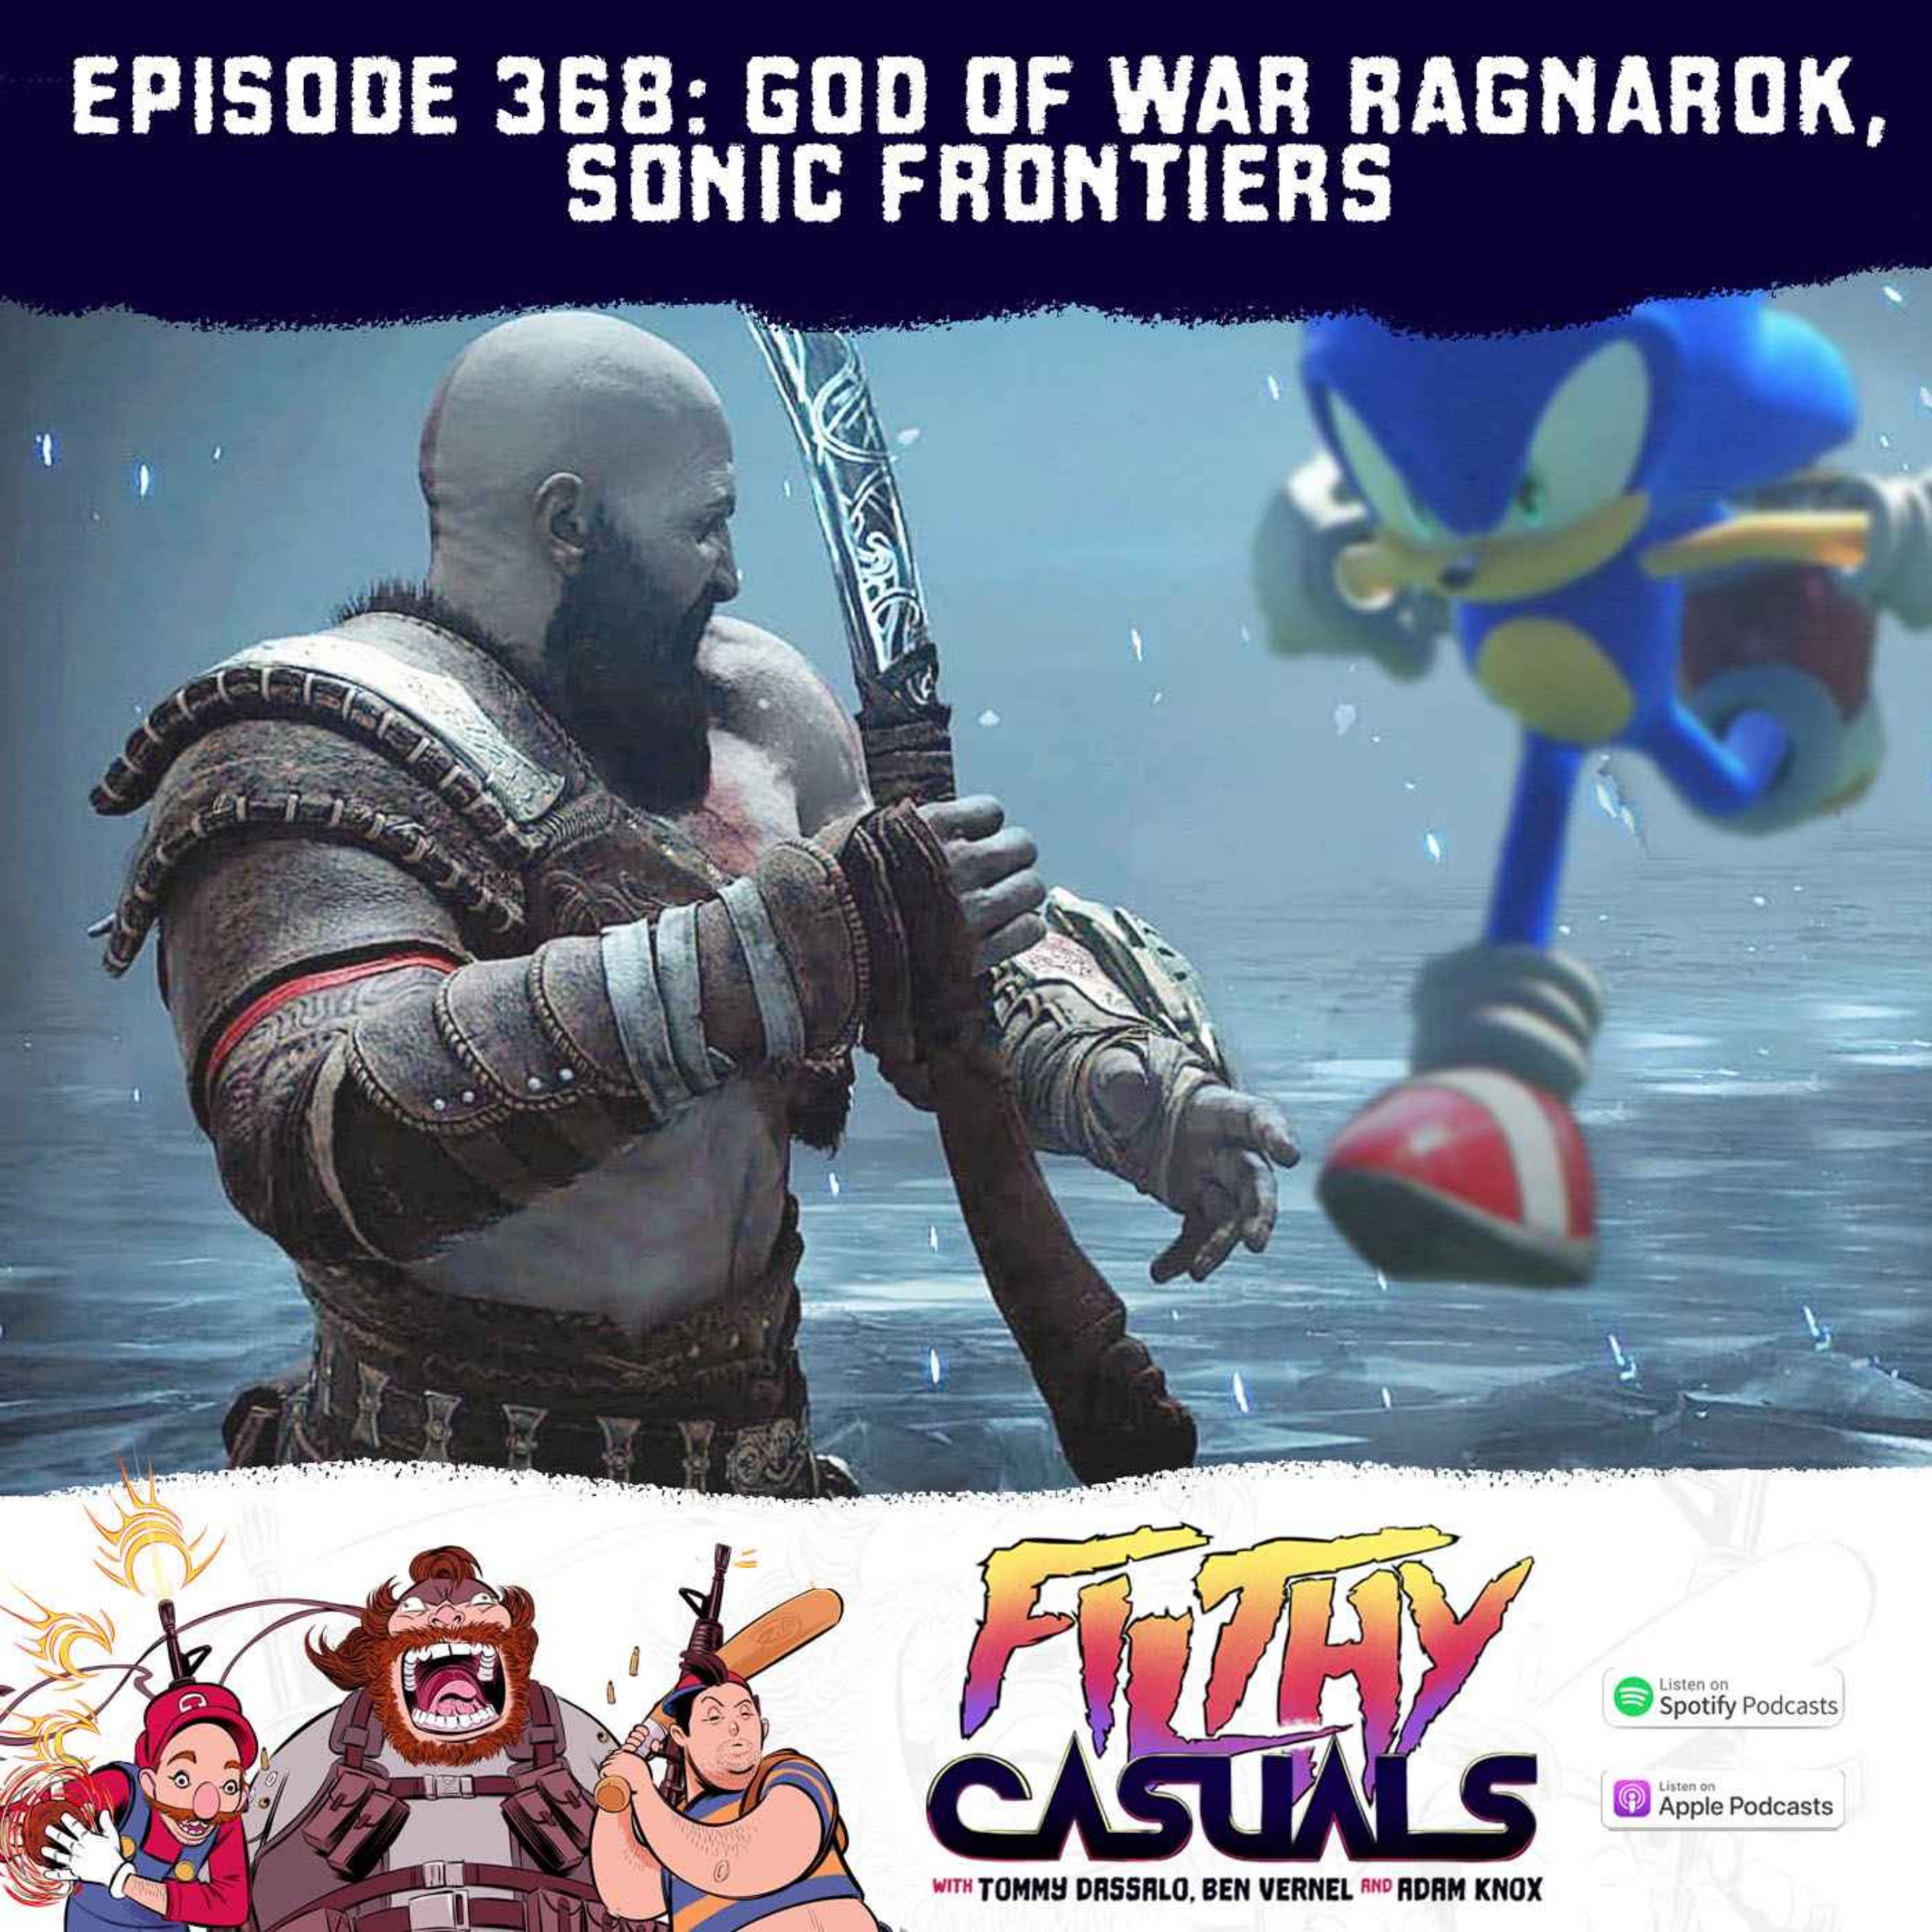 Episode 368: God of War Ragnarok, Sonic Frontiers